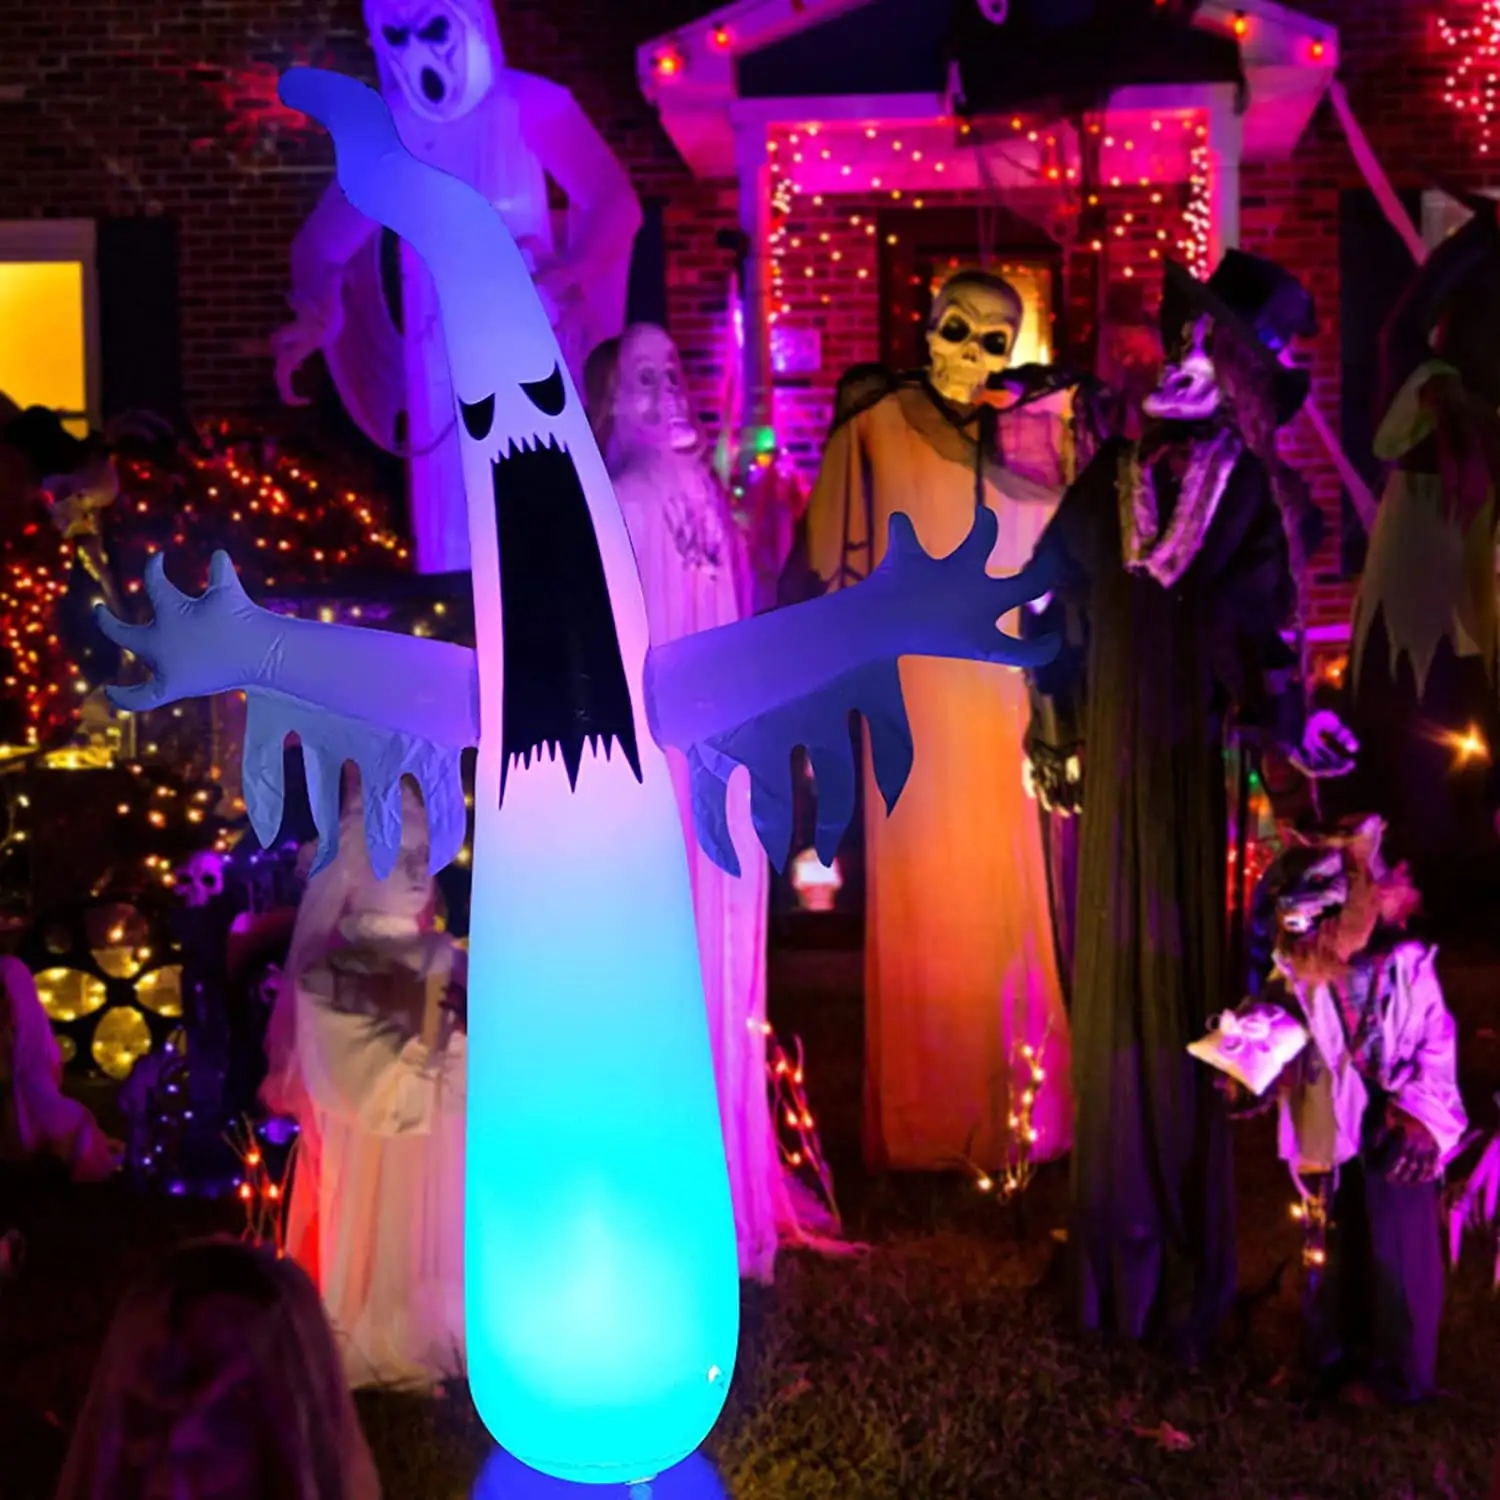 Festivali olay parti malzemeleri korku cadılar bayramı noel baskı ürün kalıp parlayan beyaz hayalet